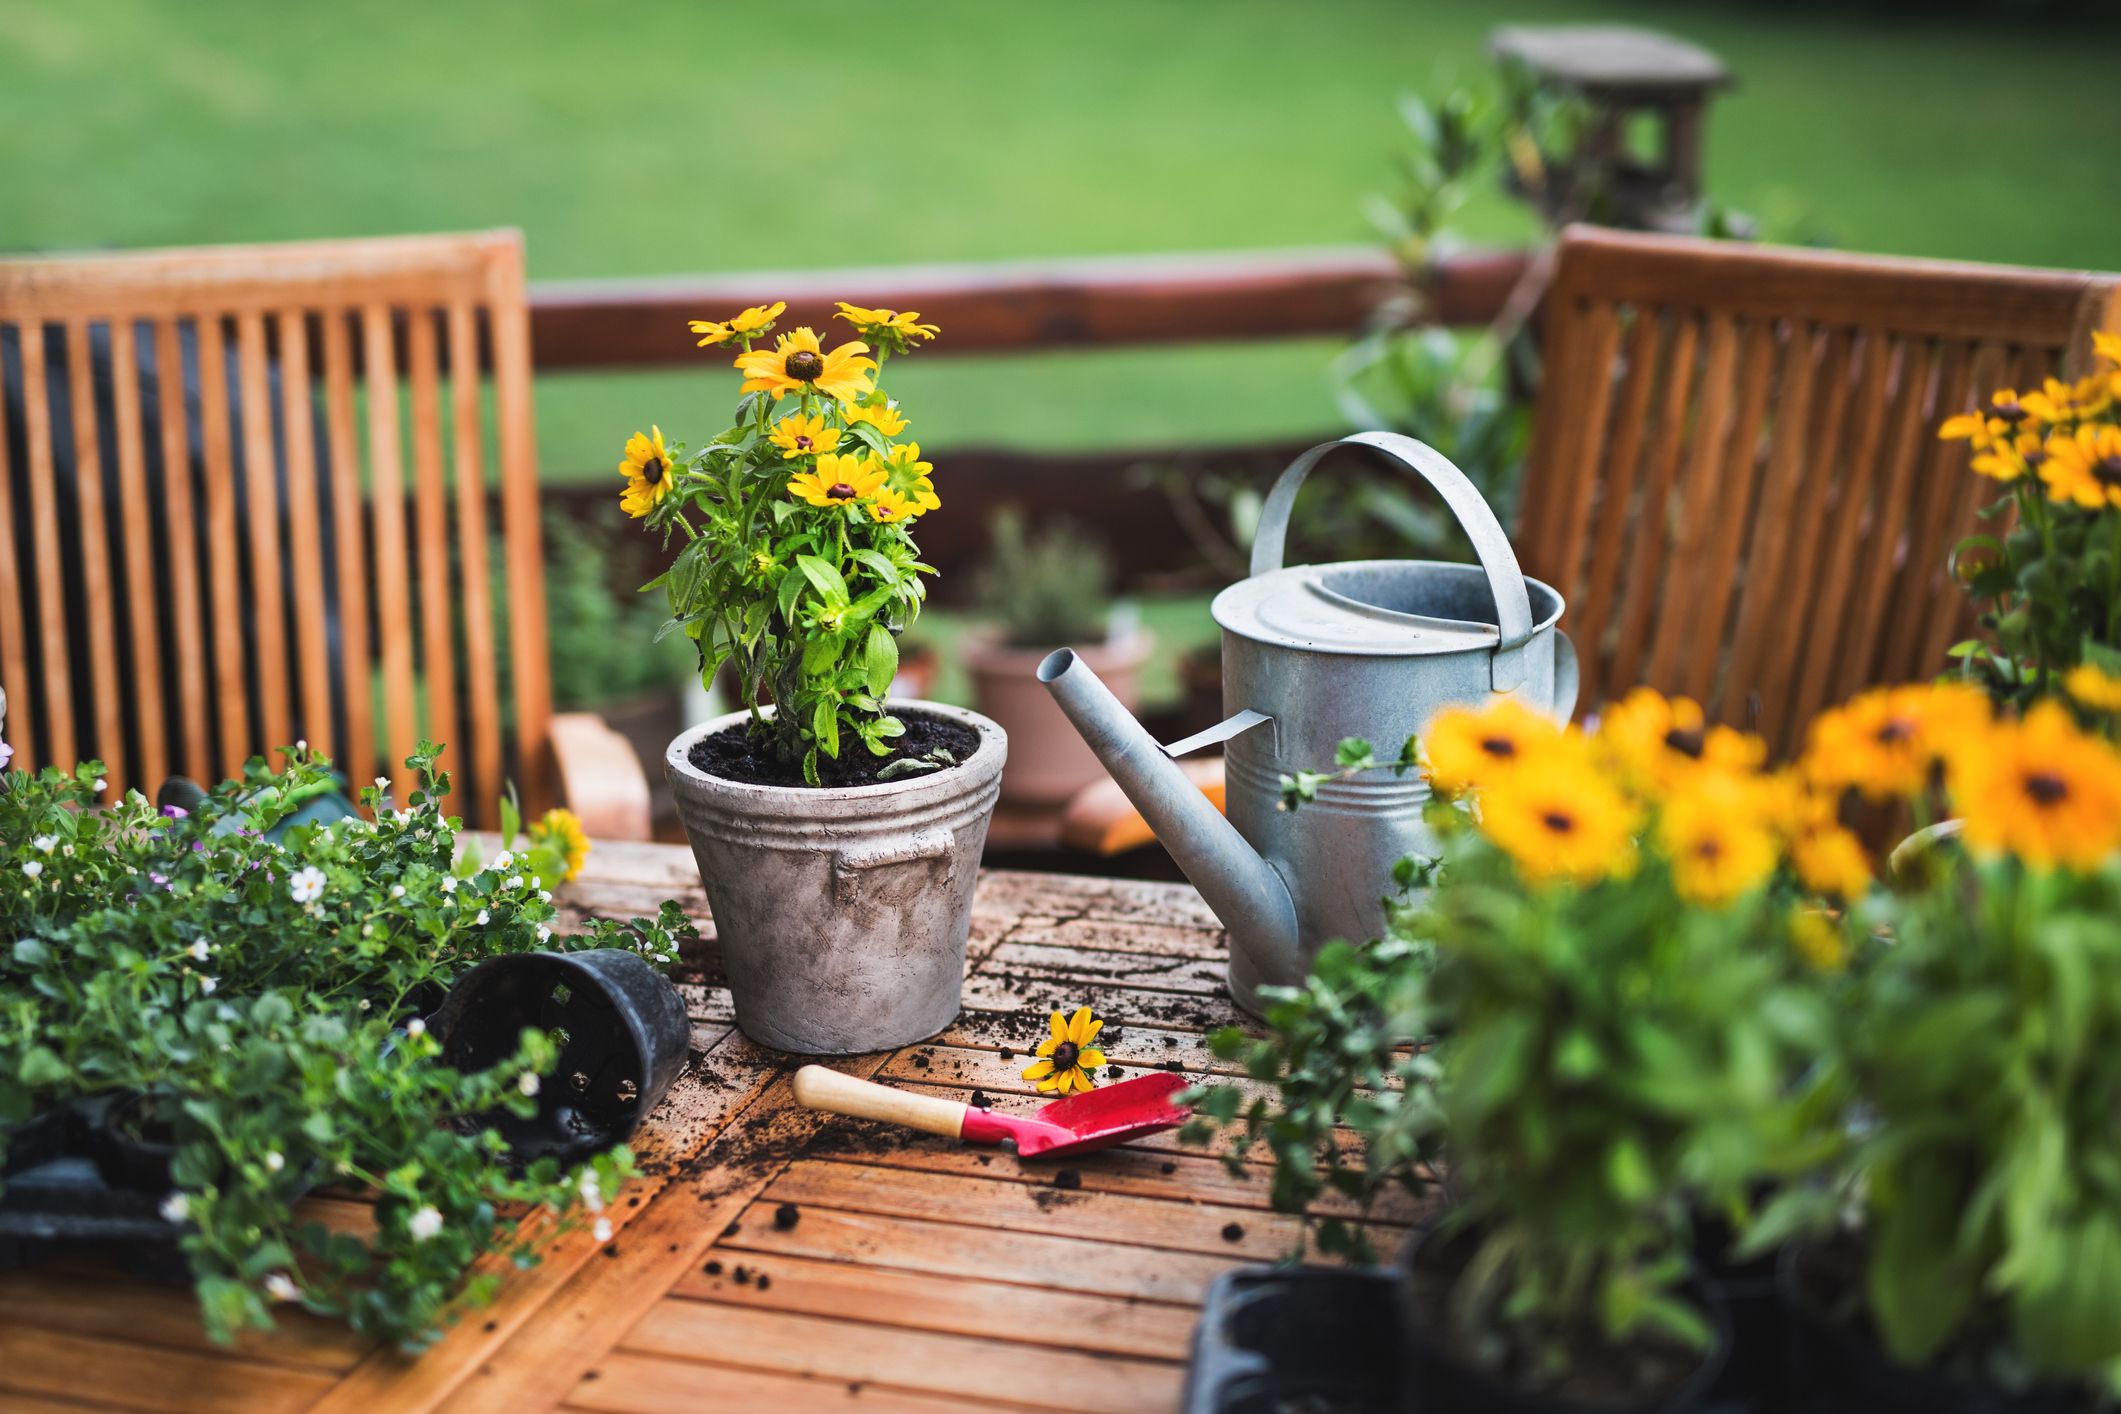 Estas son las herramientas más útiles y bonitas para tu jardín